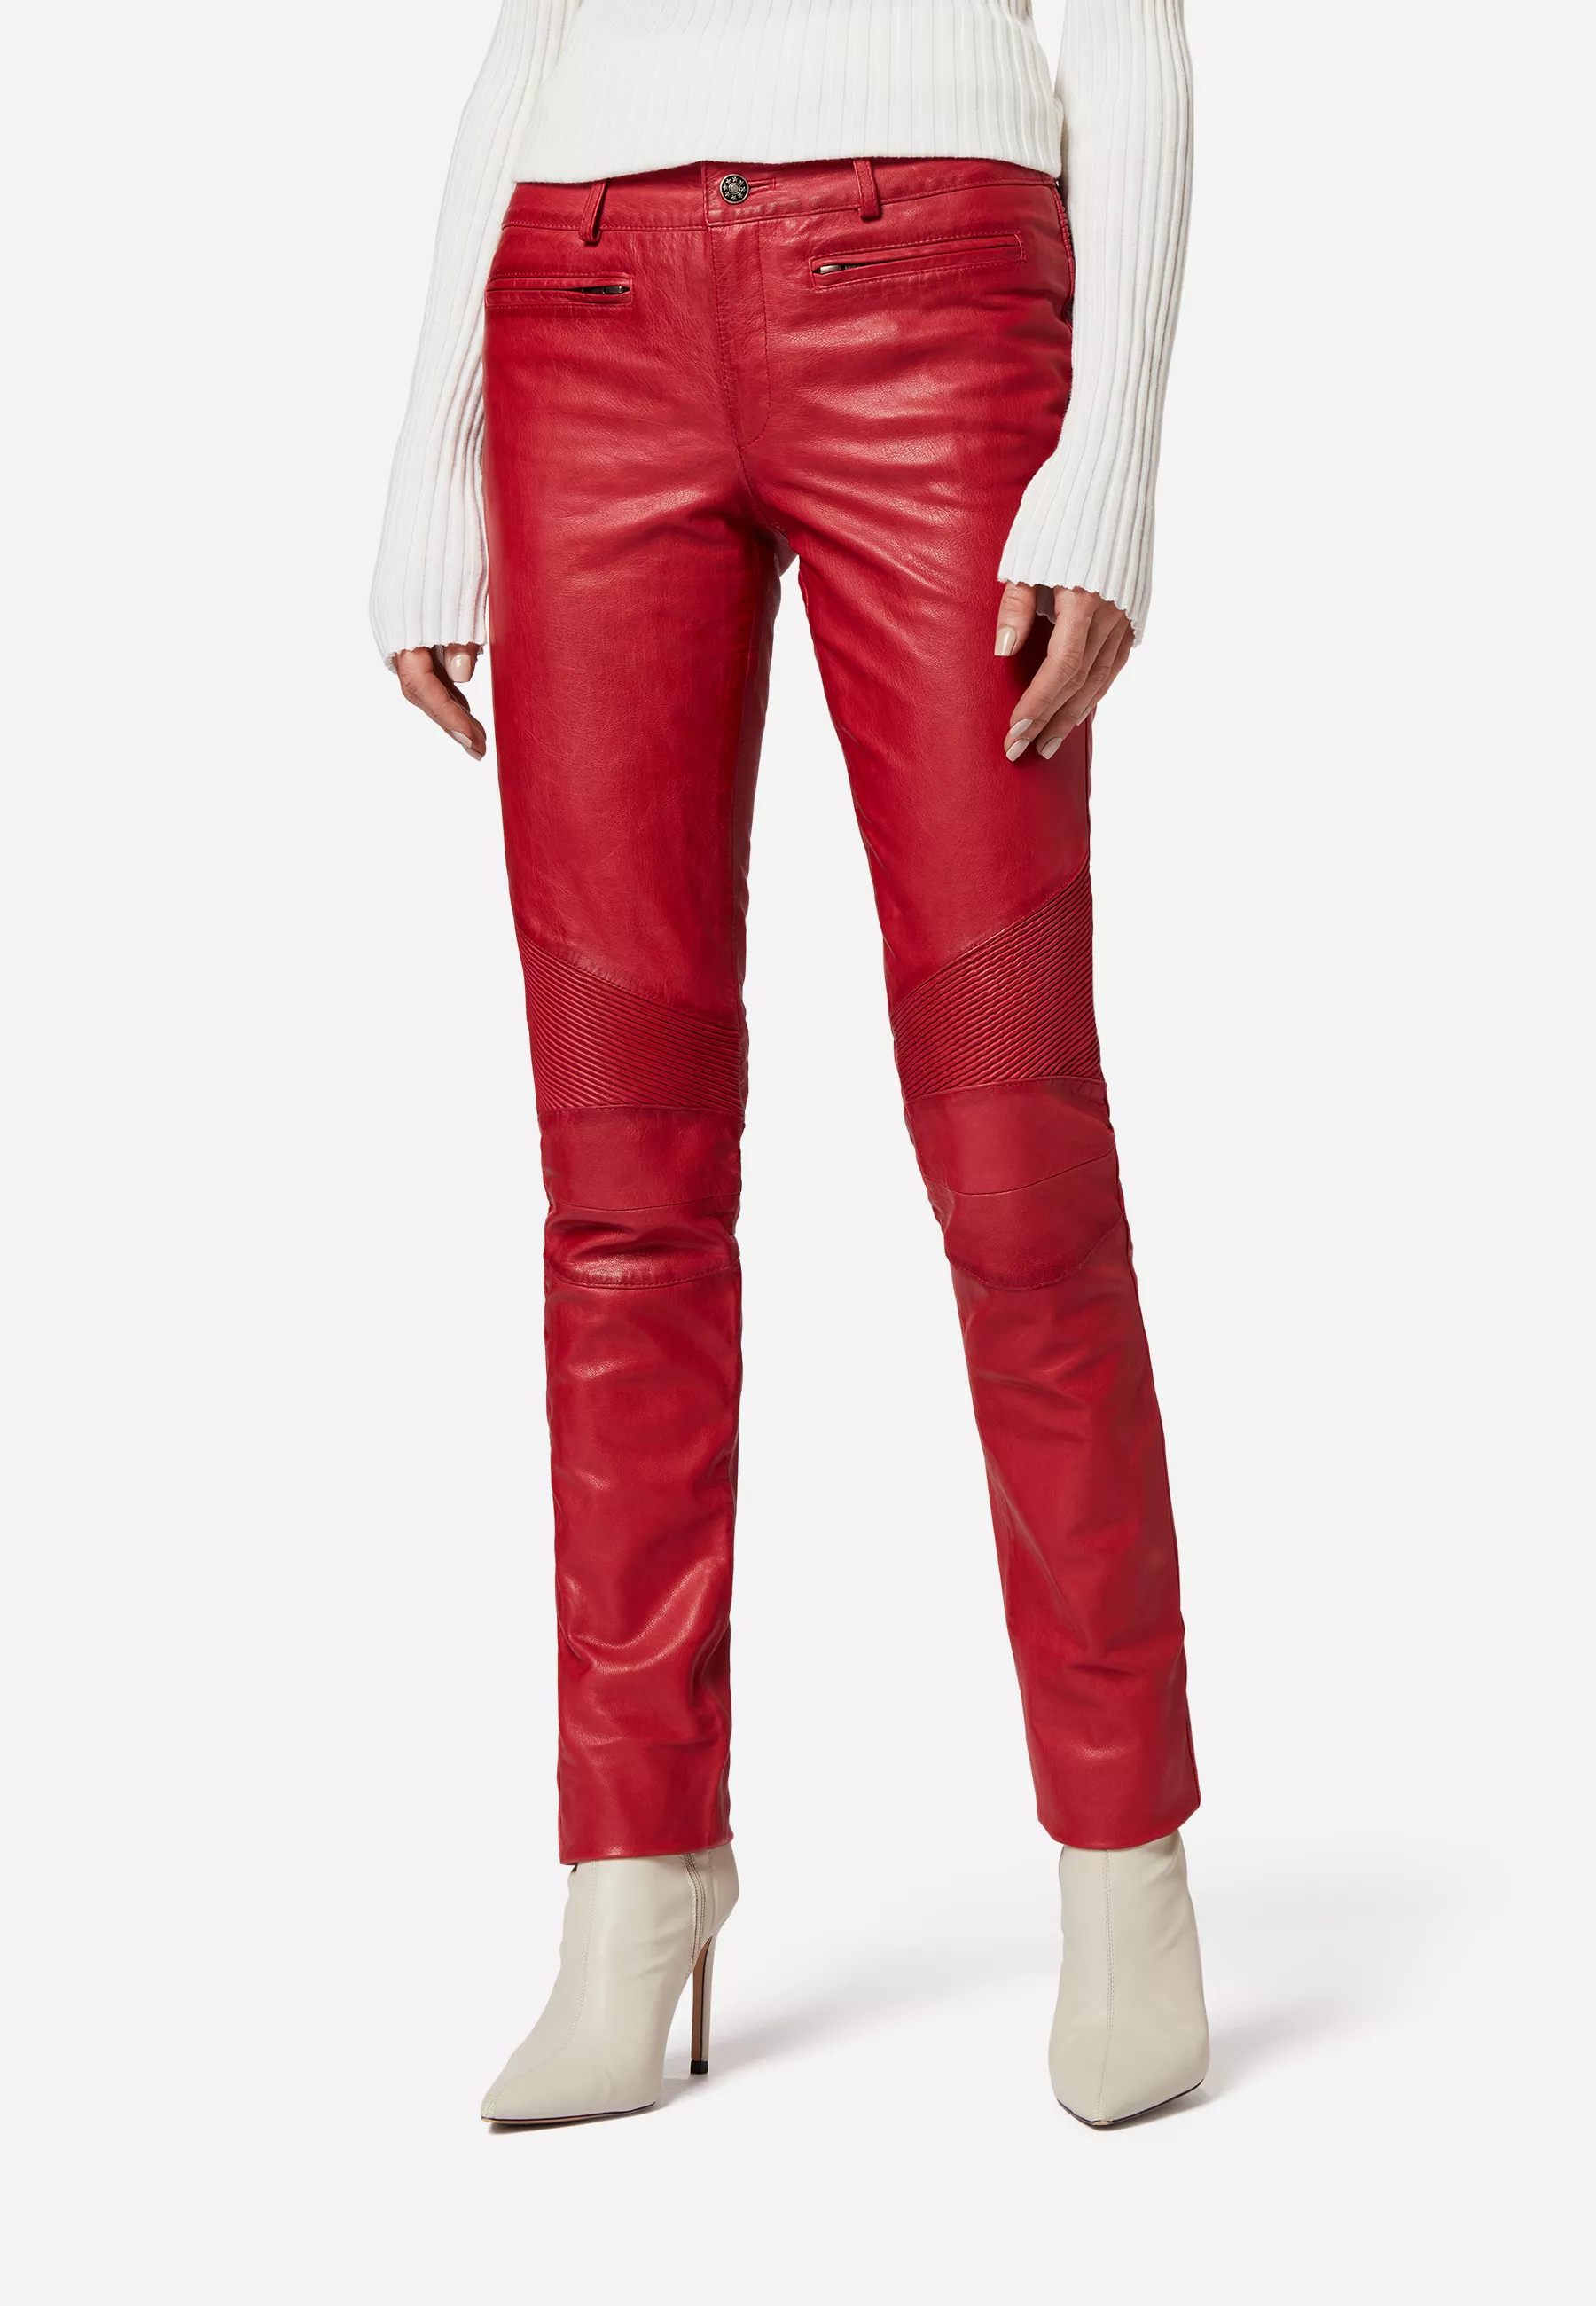 Damen Lederhose Donna in Rot von Ricano, Frontansicht am Model